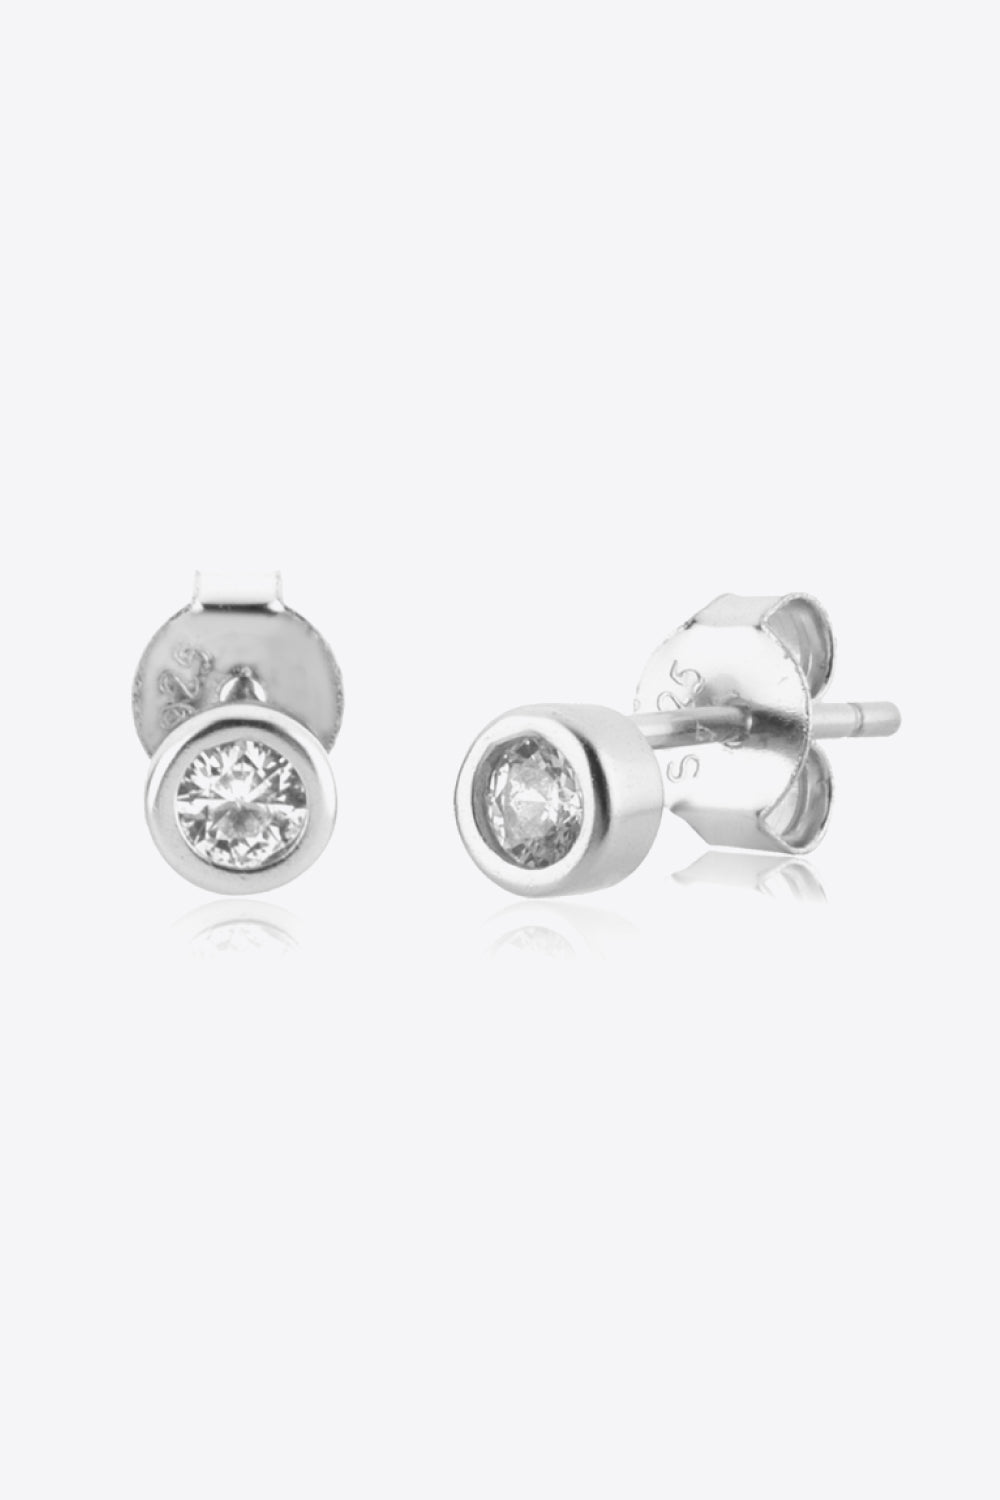 Minimalist Zircon 925 Sterling Silver Earrings - Earrings - FITGGINS